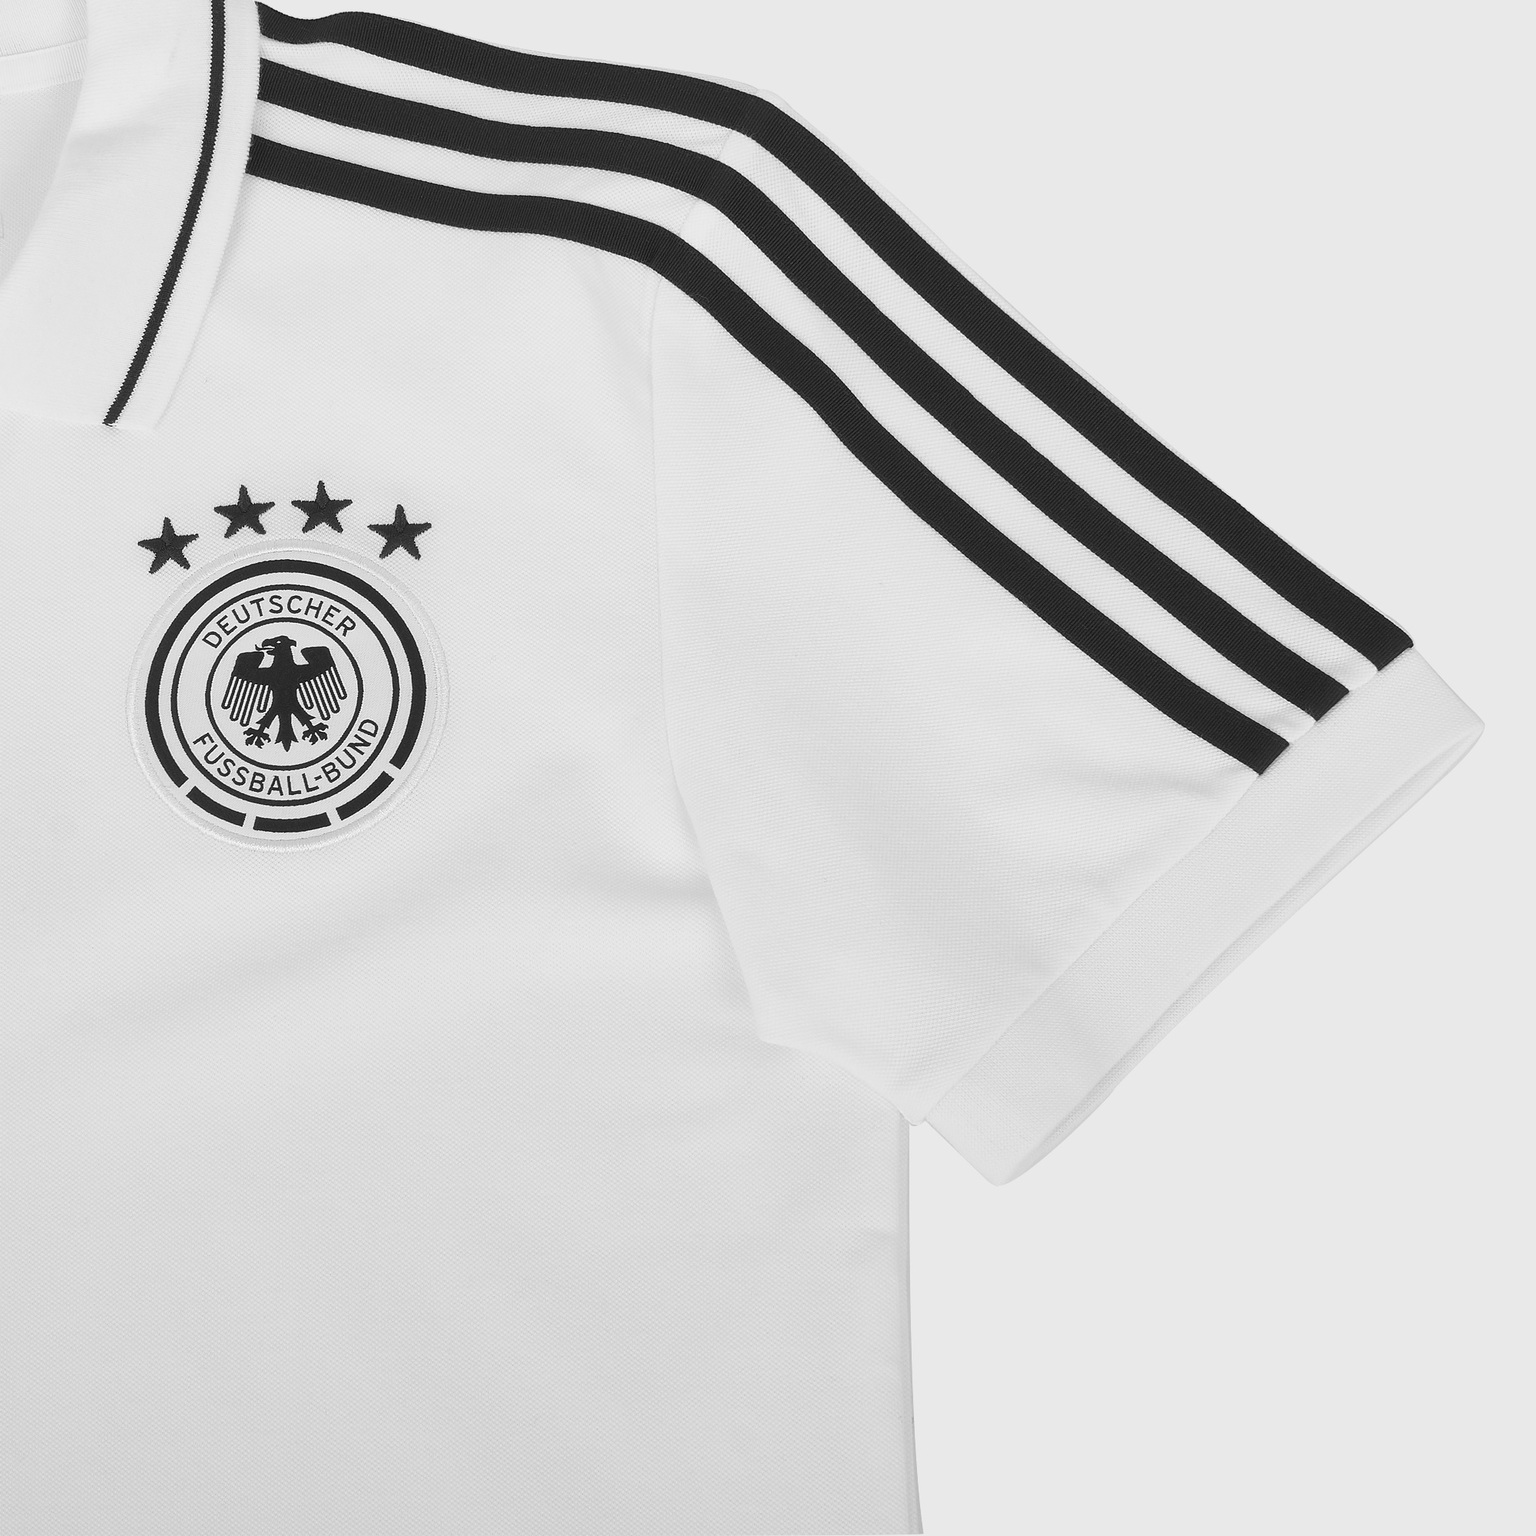 Поло Adidas сборной Германии сезон 2020/21